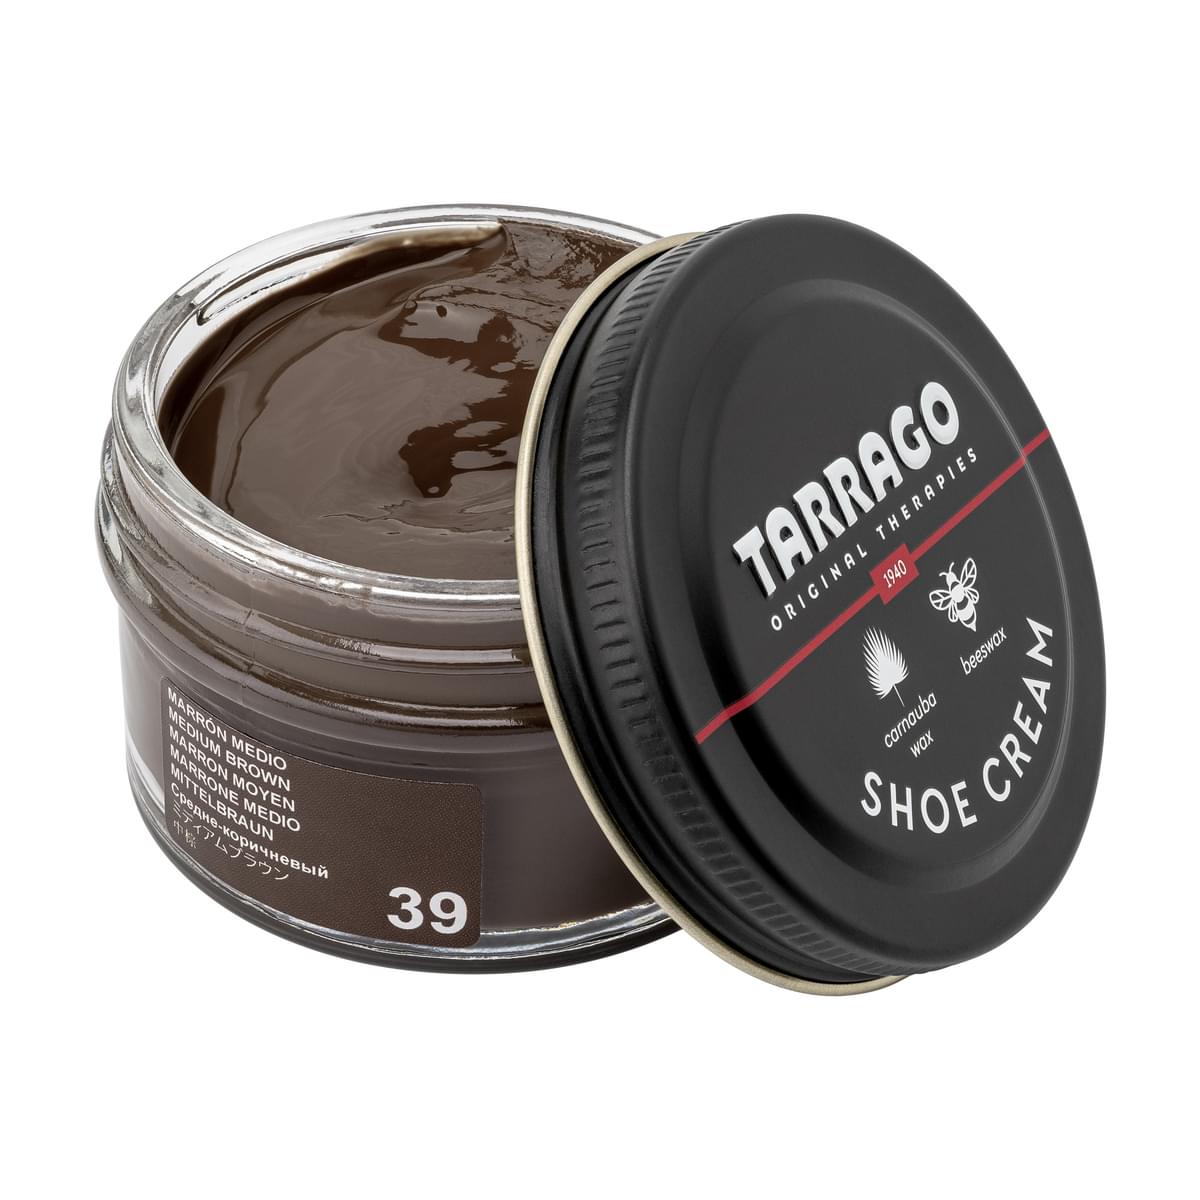 Tarrago Shoe Cream  - Medium Brown - 39